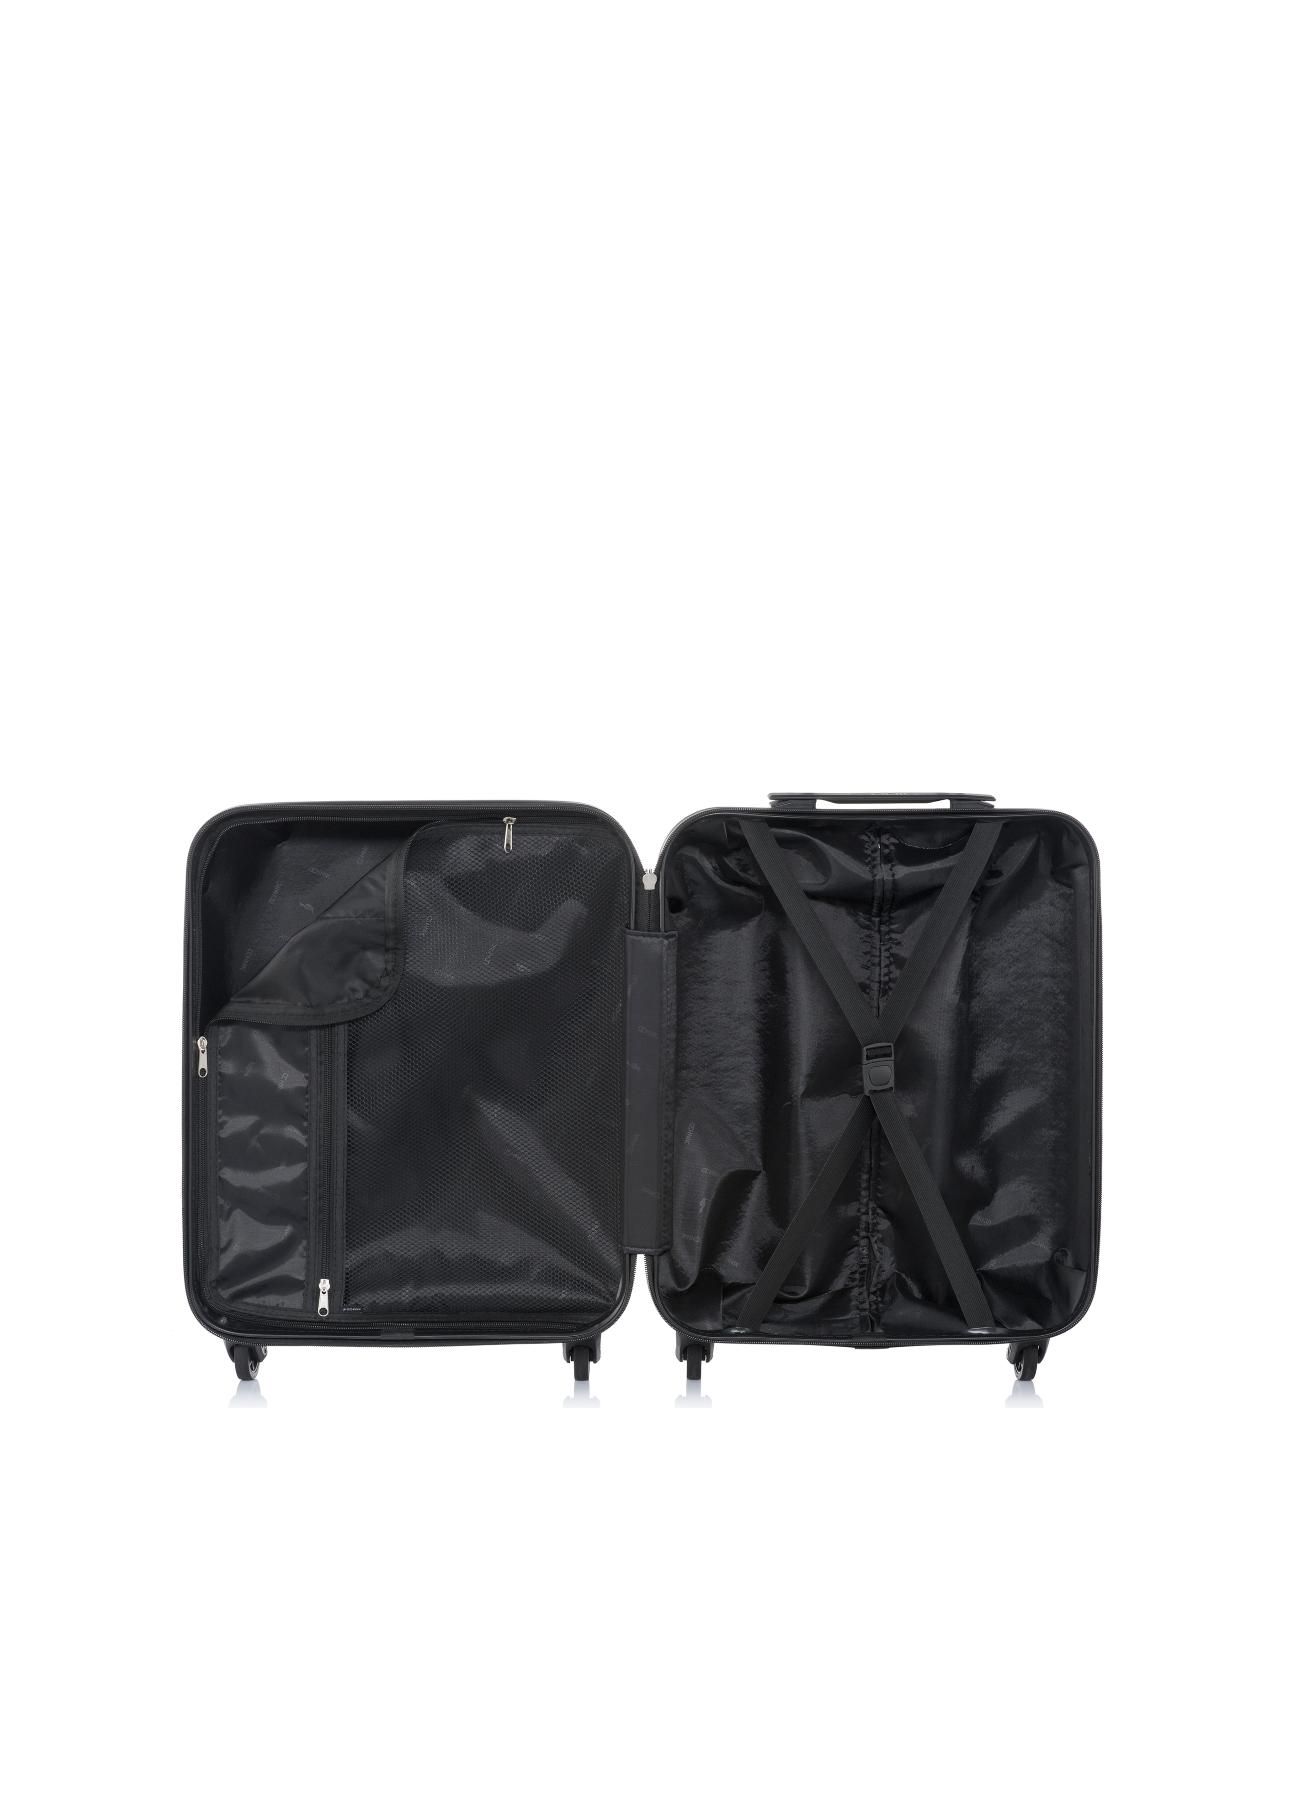 Mała walizka na kółkach WALAB-0037-15-19